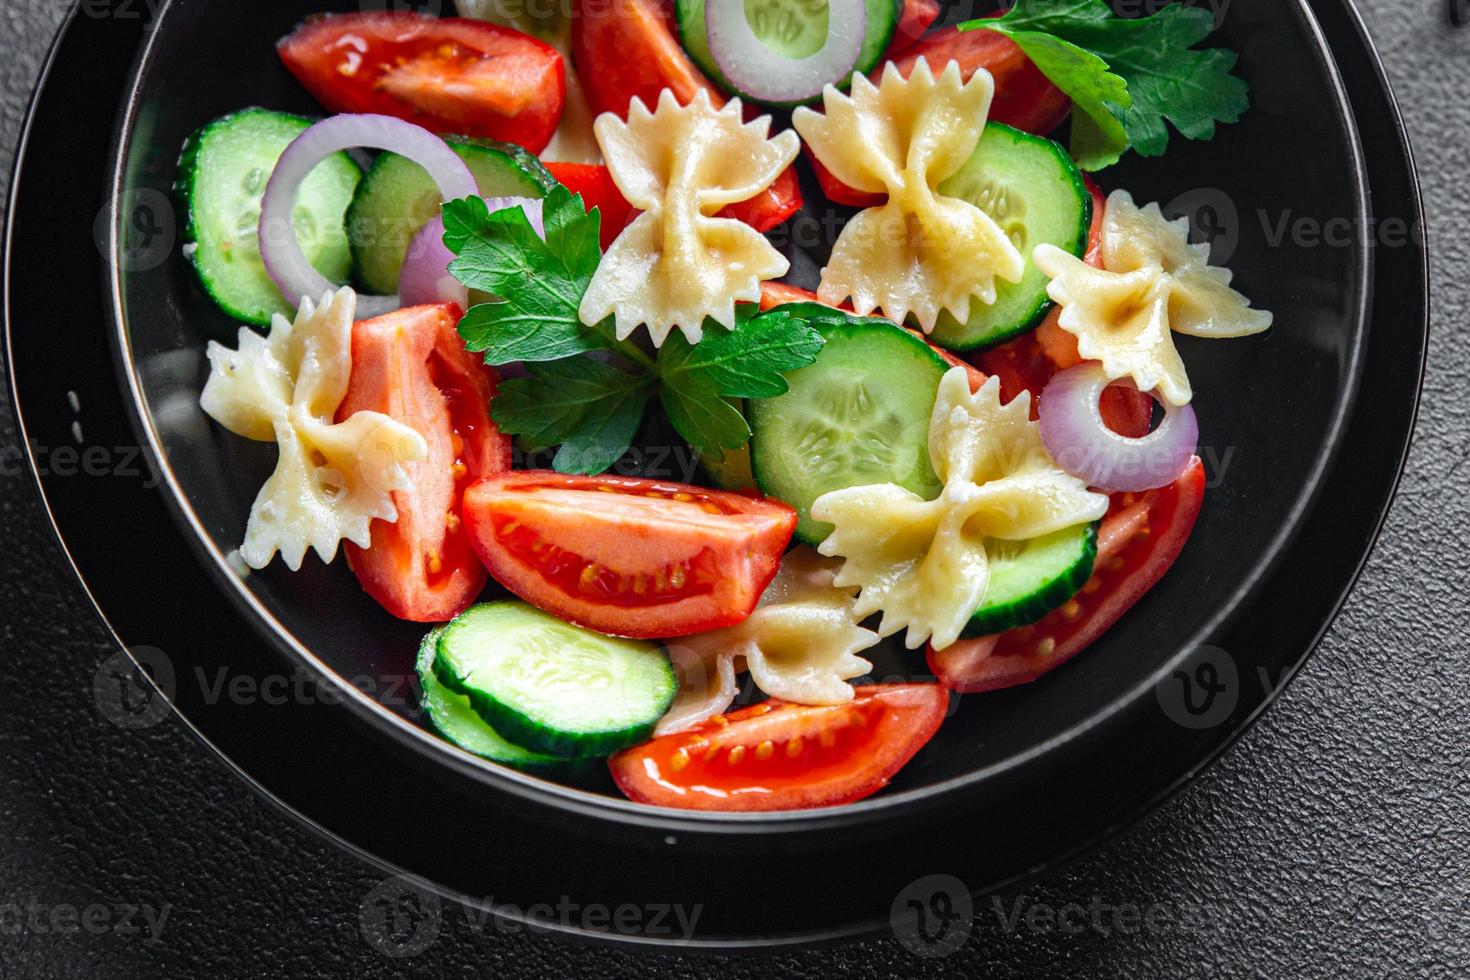 pastasalade farfalle, tomaat, komkommer, ui gezonde maaltijd dieet foto